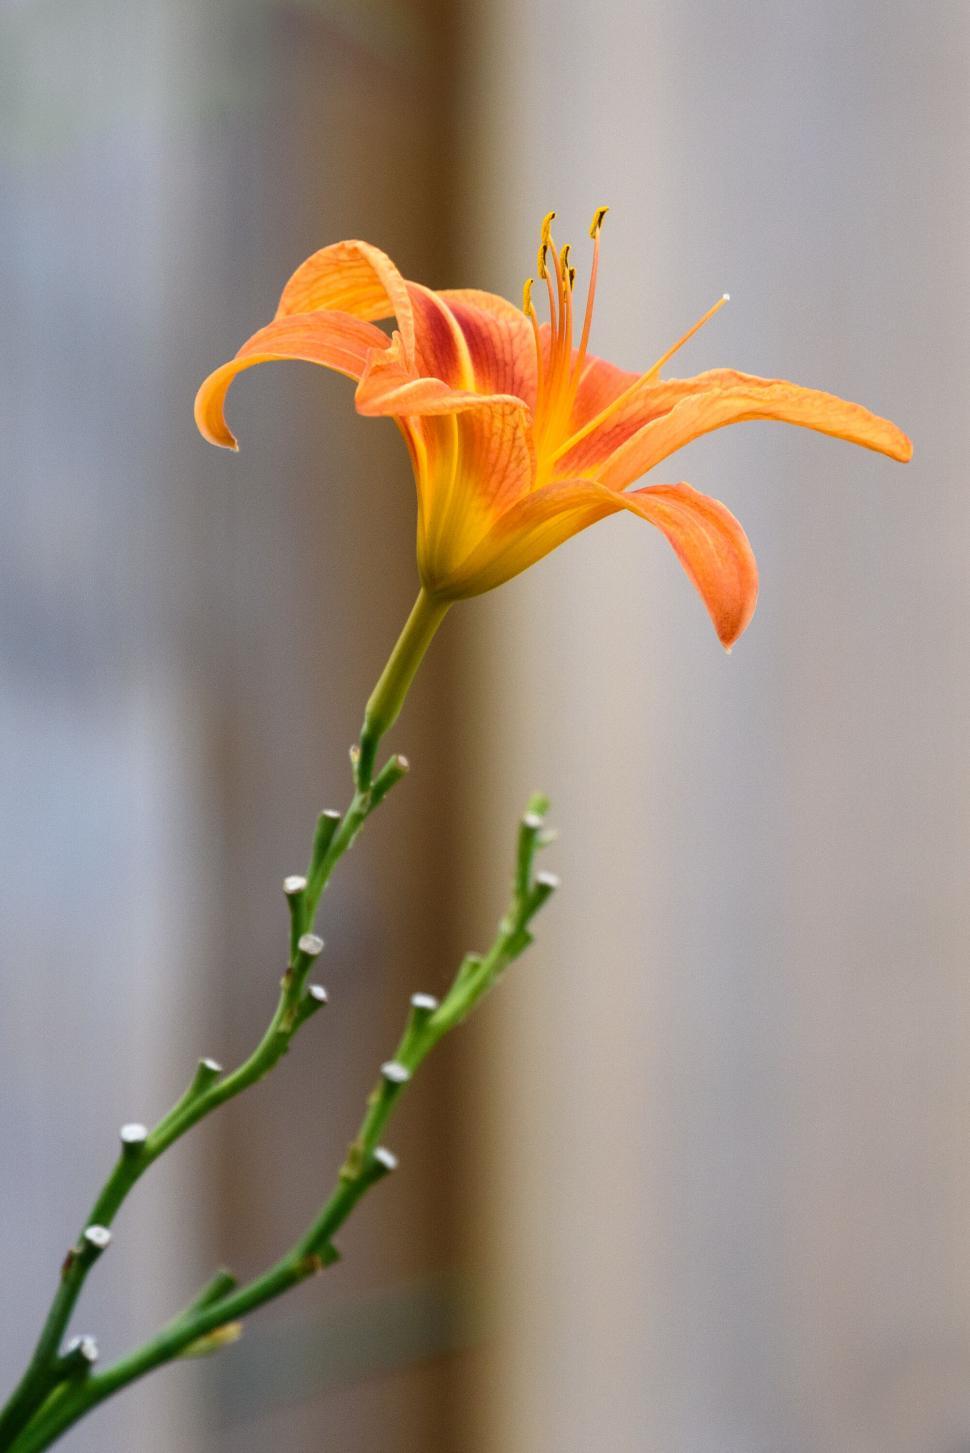 Free Image of Orange lily flower on a slender green stalk. 